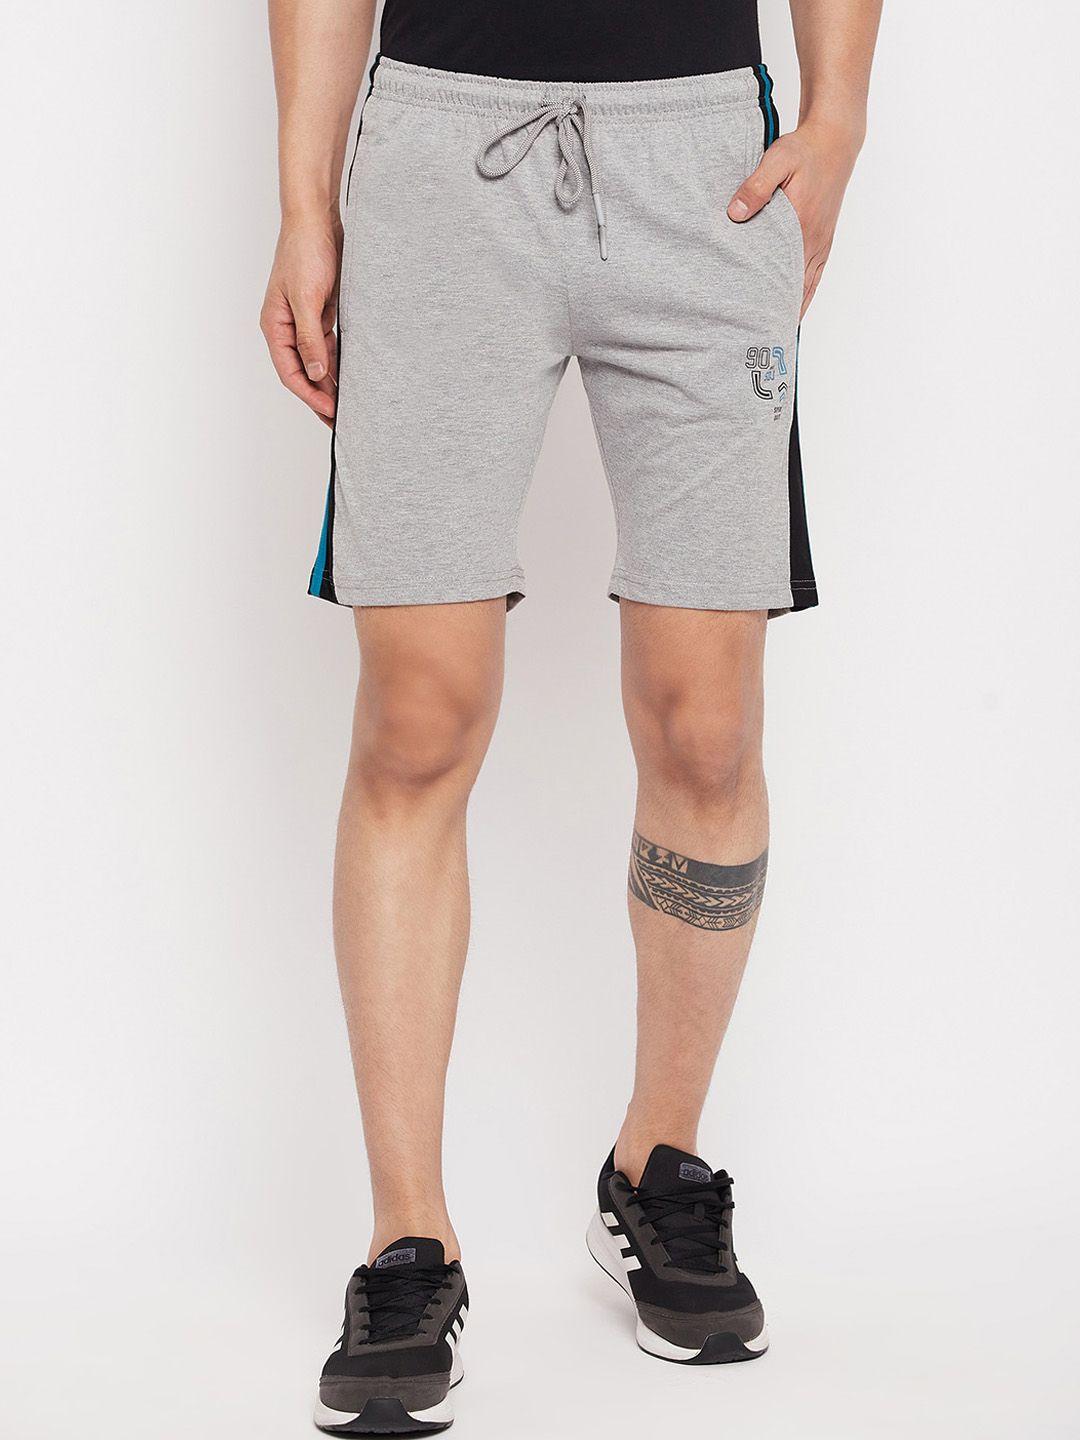 duke-men-mid-rise-cotton-sports-shorts